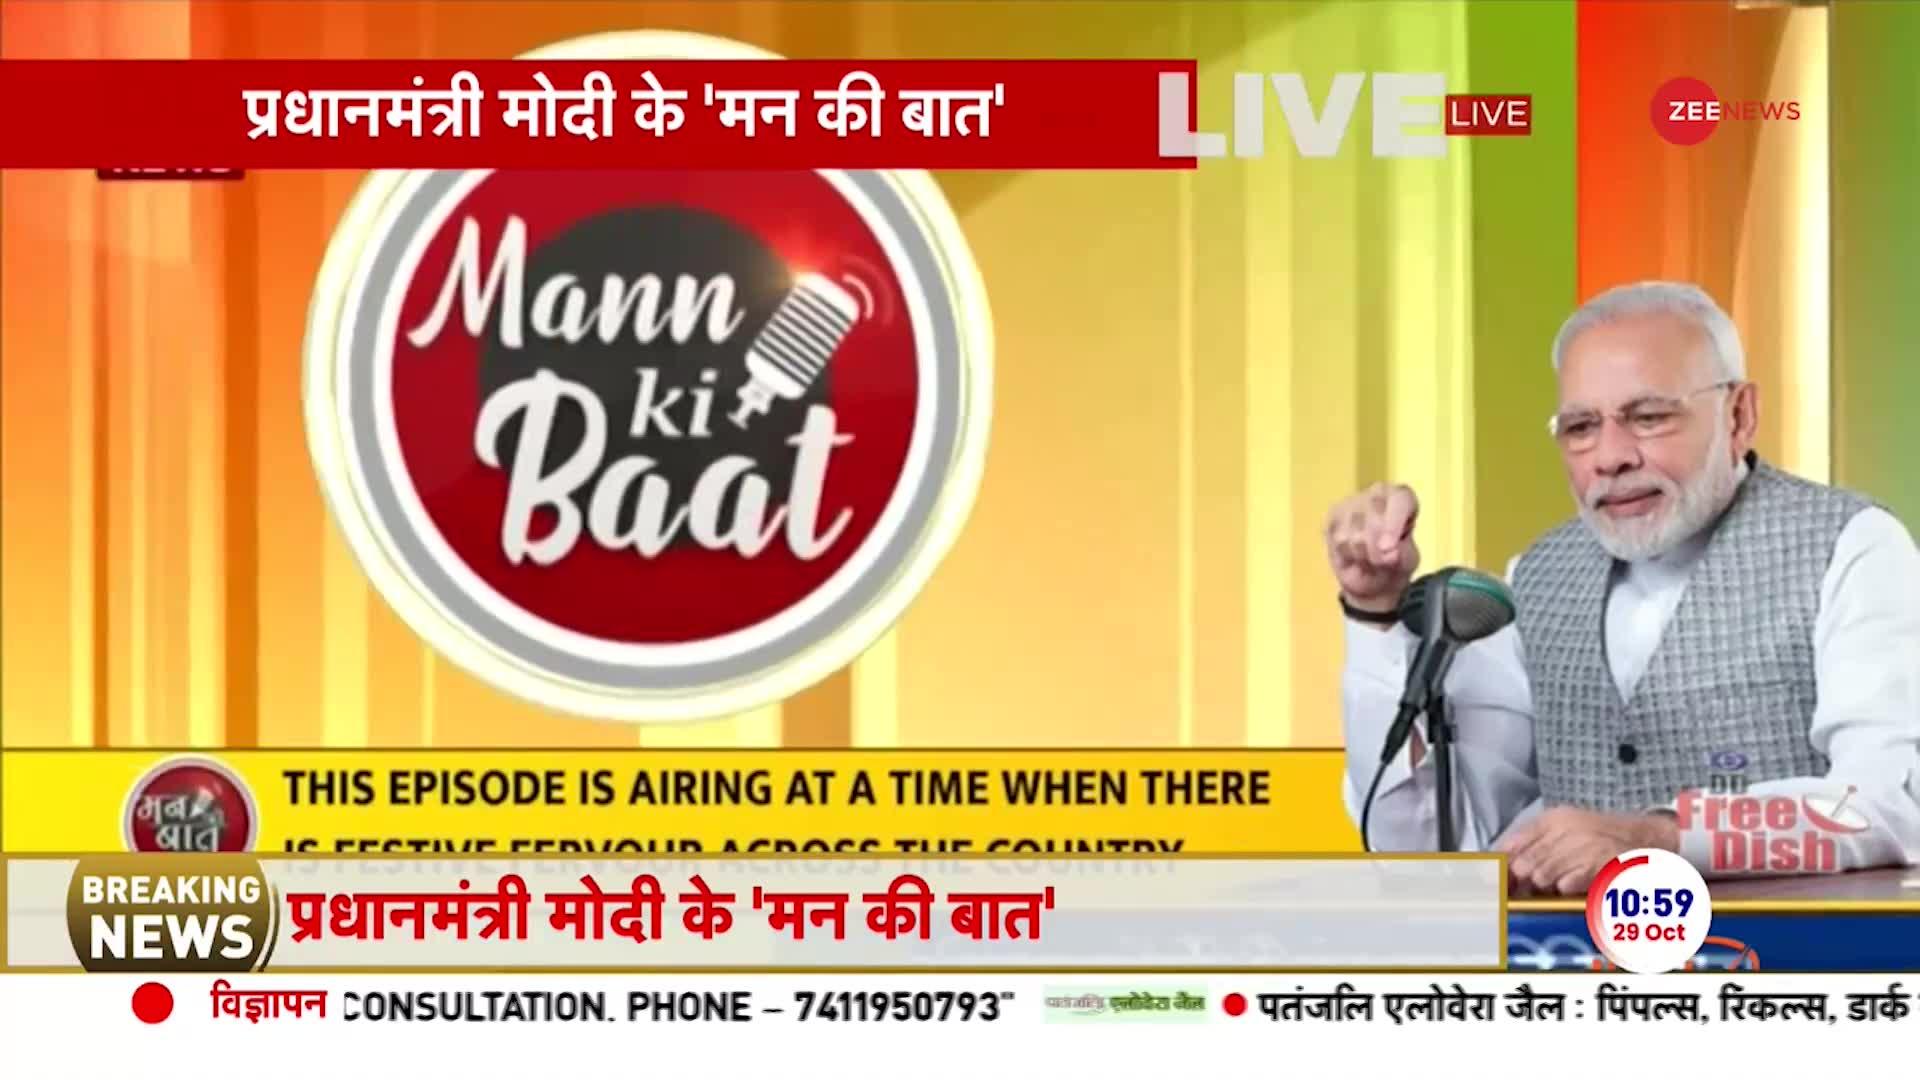 Mann Ki Baat: प्रधानमंत्री नरेंद्र मोदी ने मन की बात के 106वें एपिसोड में खादी बिक्री पर चर्चा की